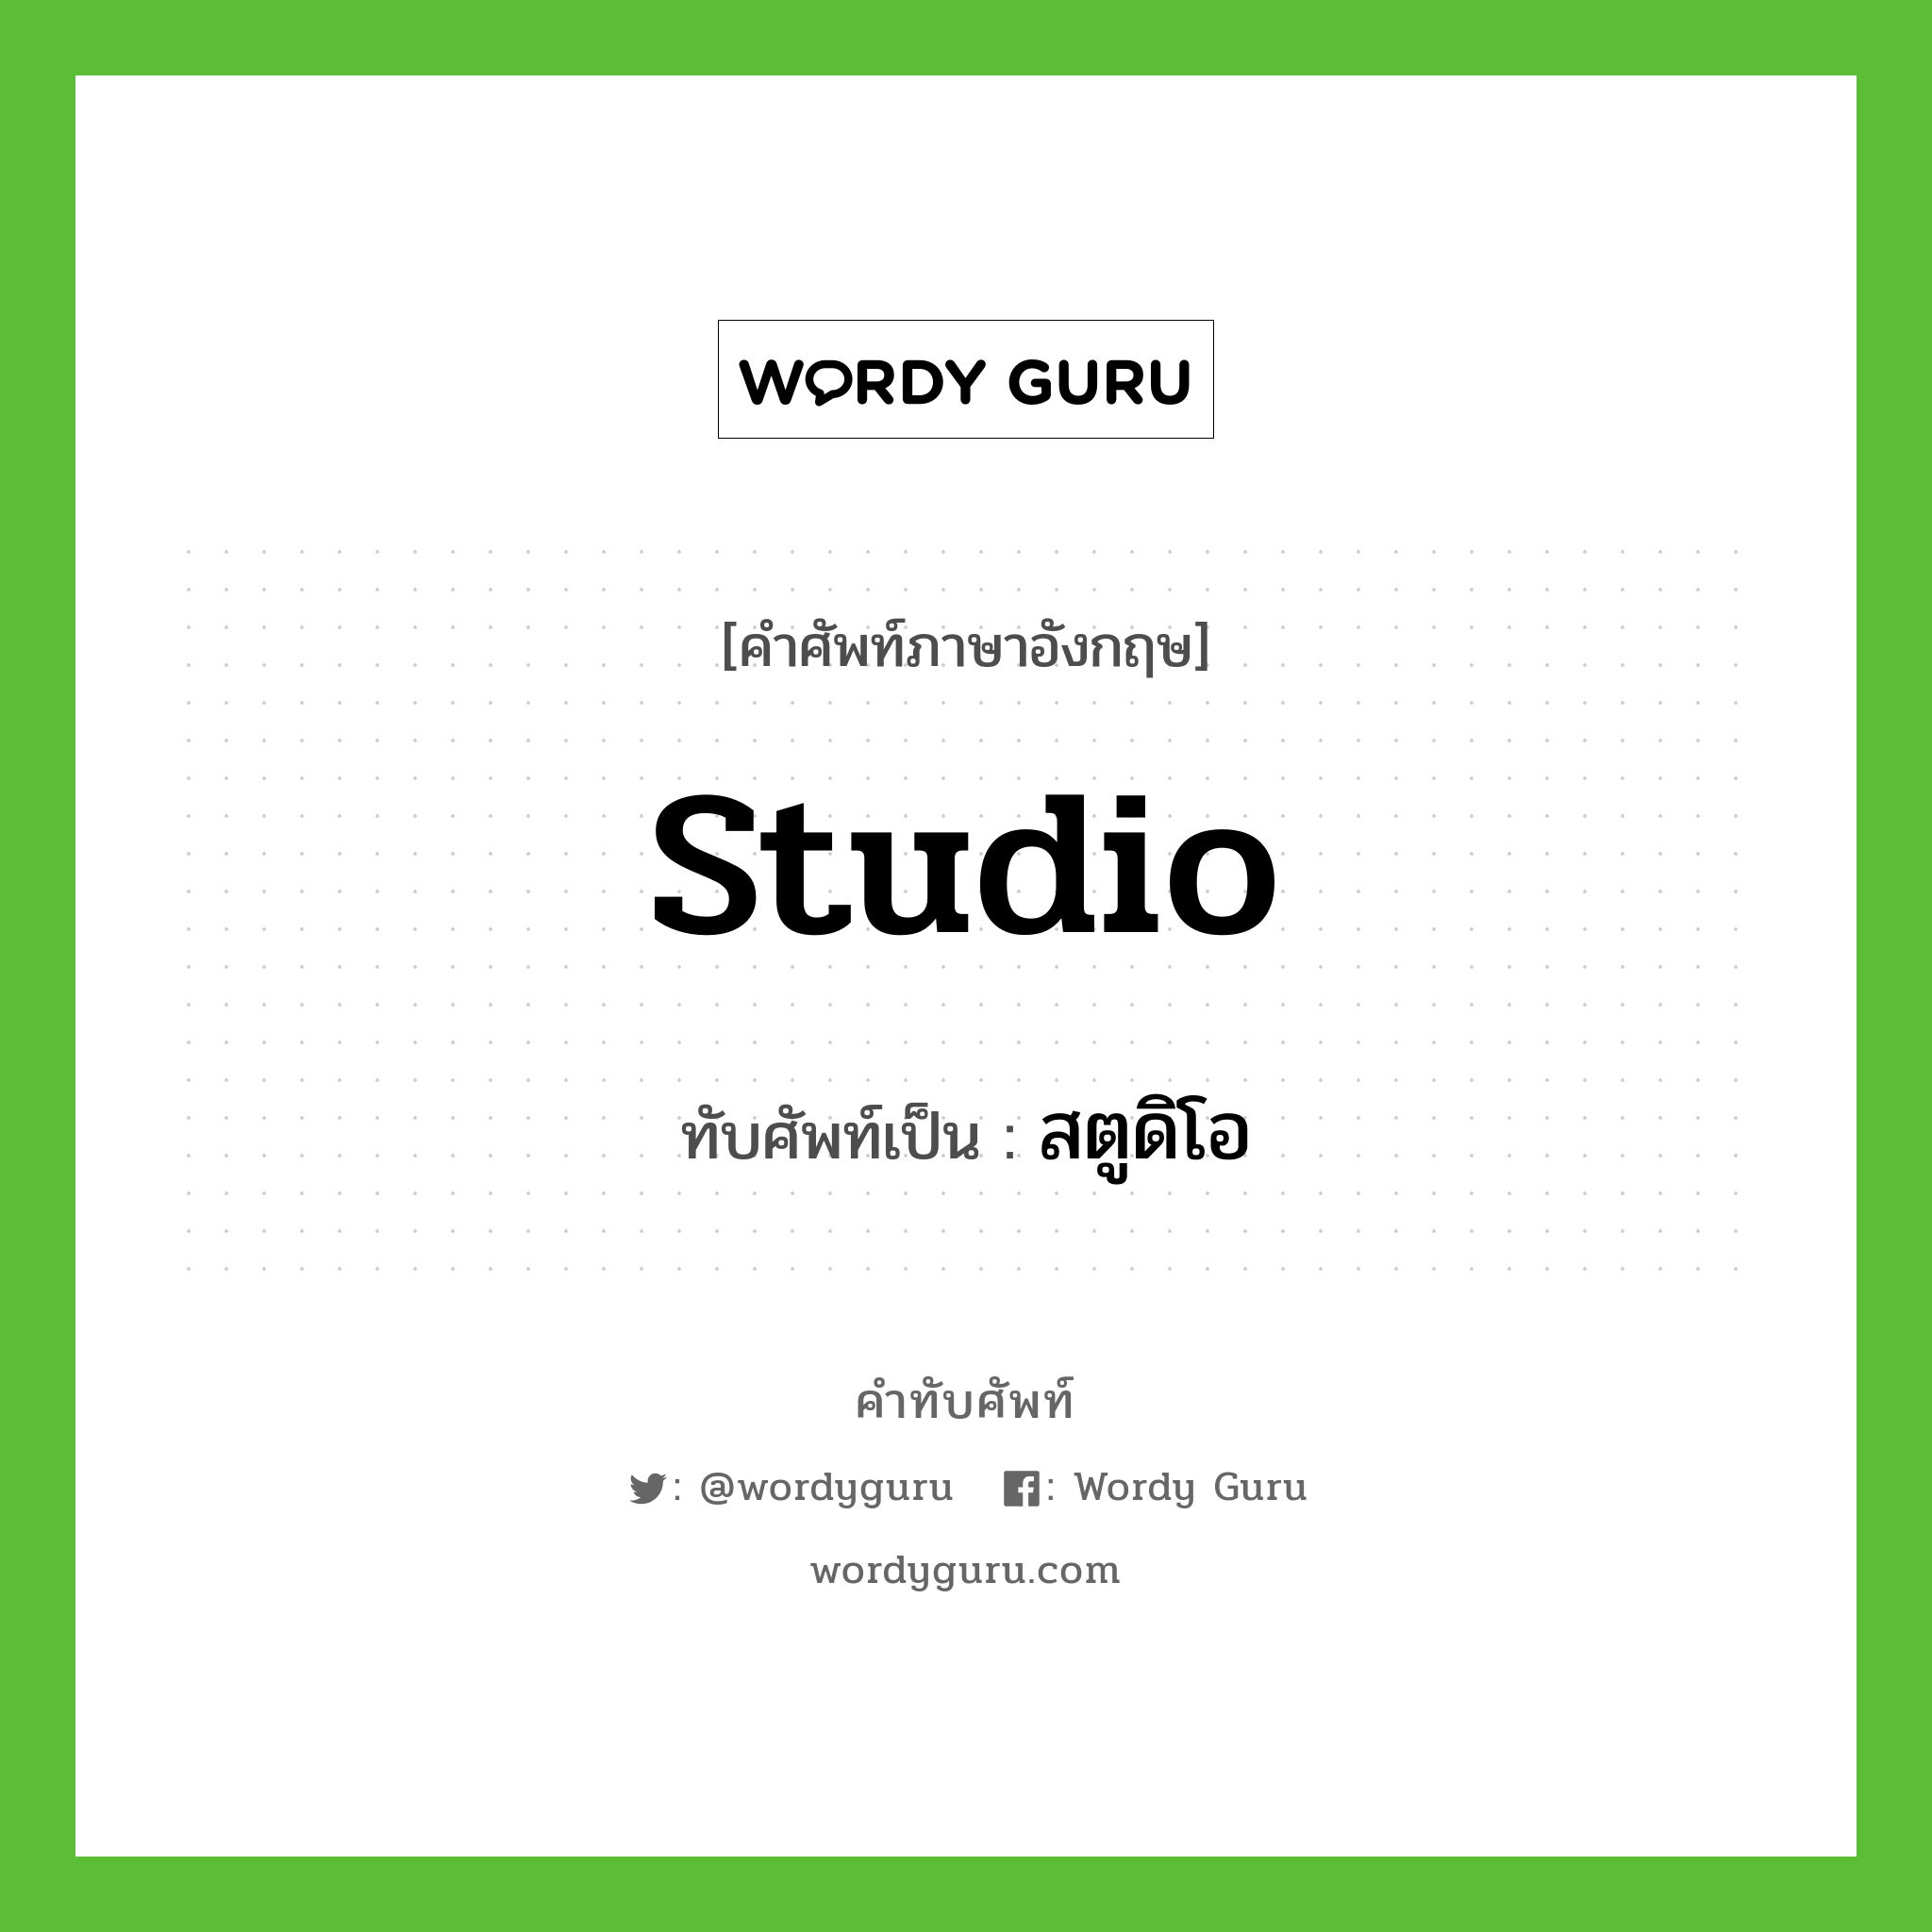 Studio เขียนเป็นคำไทยว่าอะไร?, คำศัพท์ภาษาอังกฤษ Studio ทับศัพท์เป็น สตูดิโอ